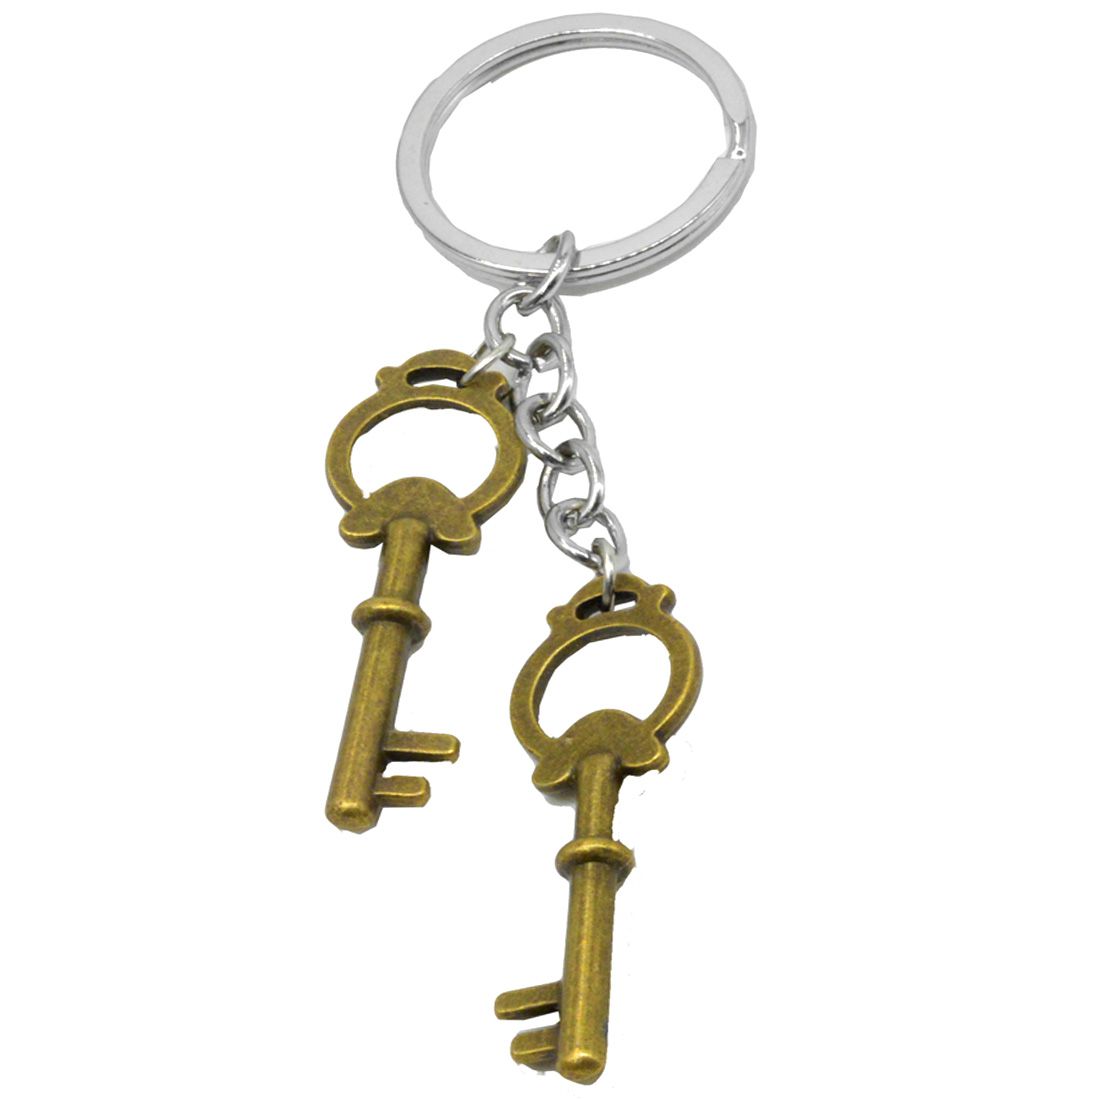 Faynci Pair of Brown keys metal Key Chain: Buy Online at Low Price in ...